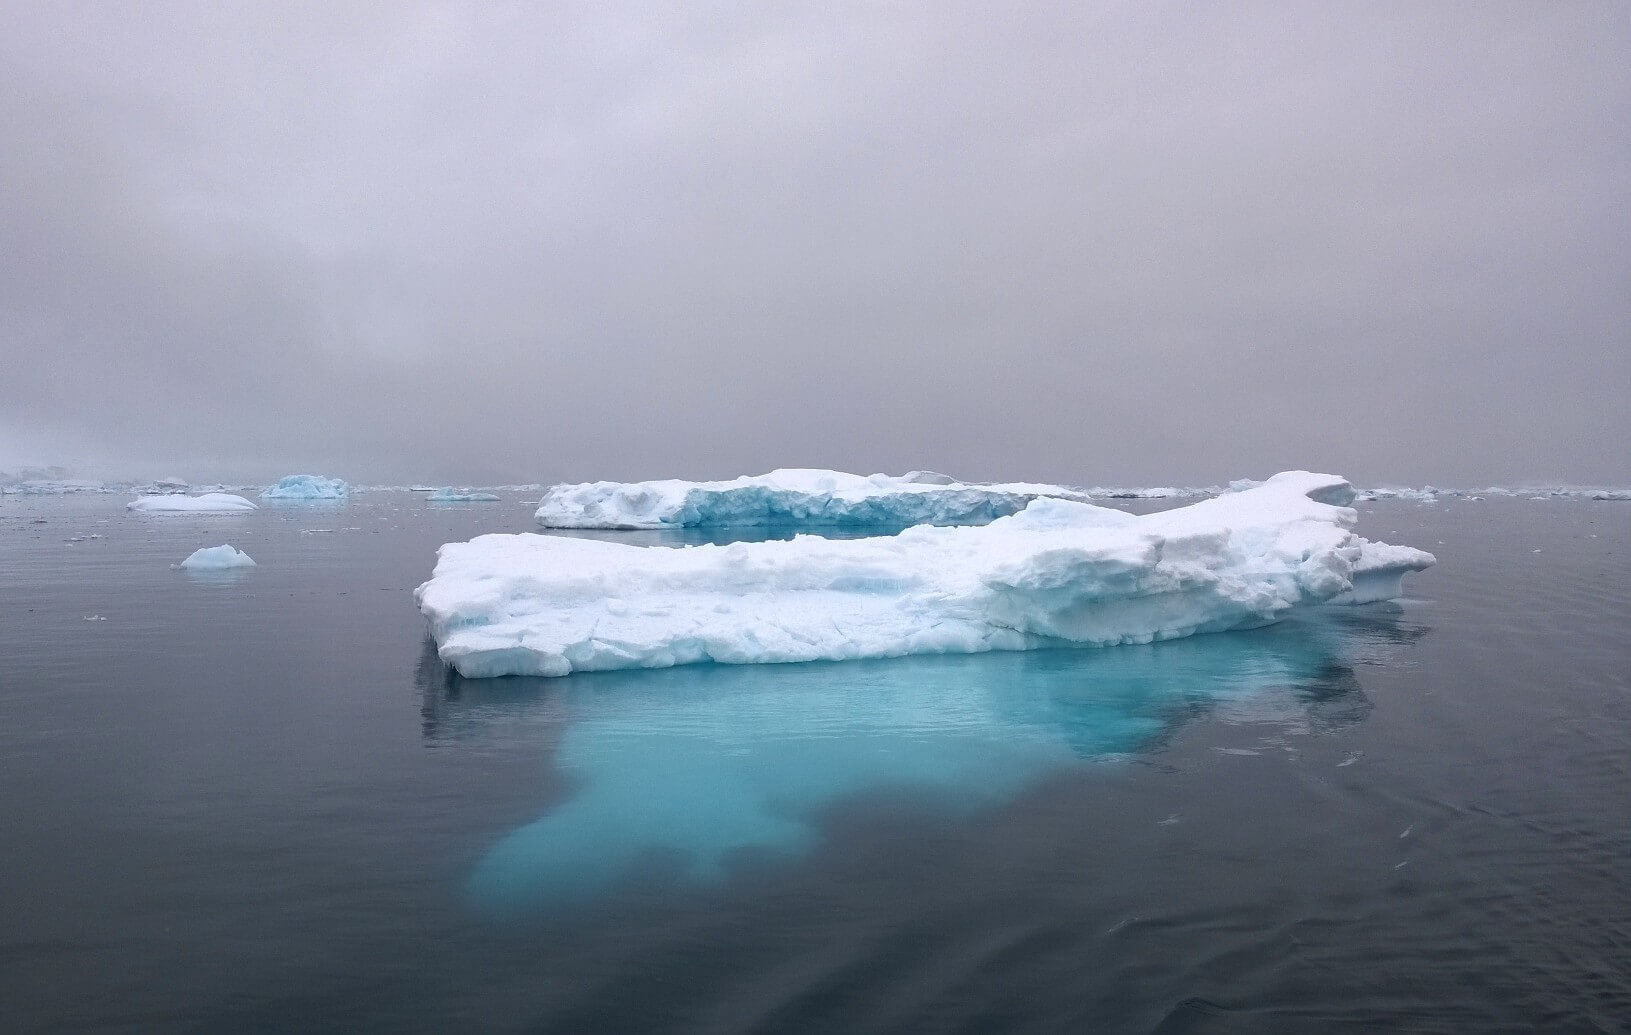 drijfijs afgebroken van de ijskap van Antarctica